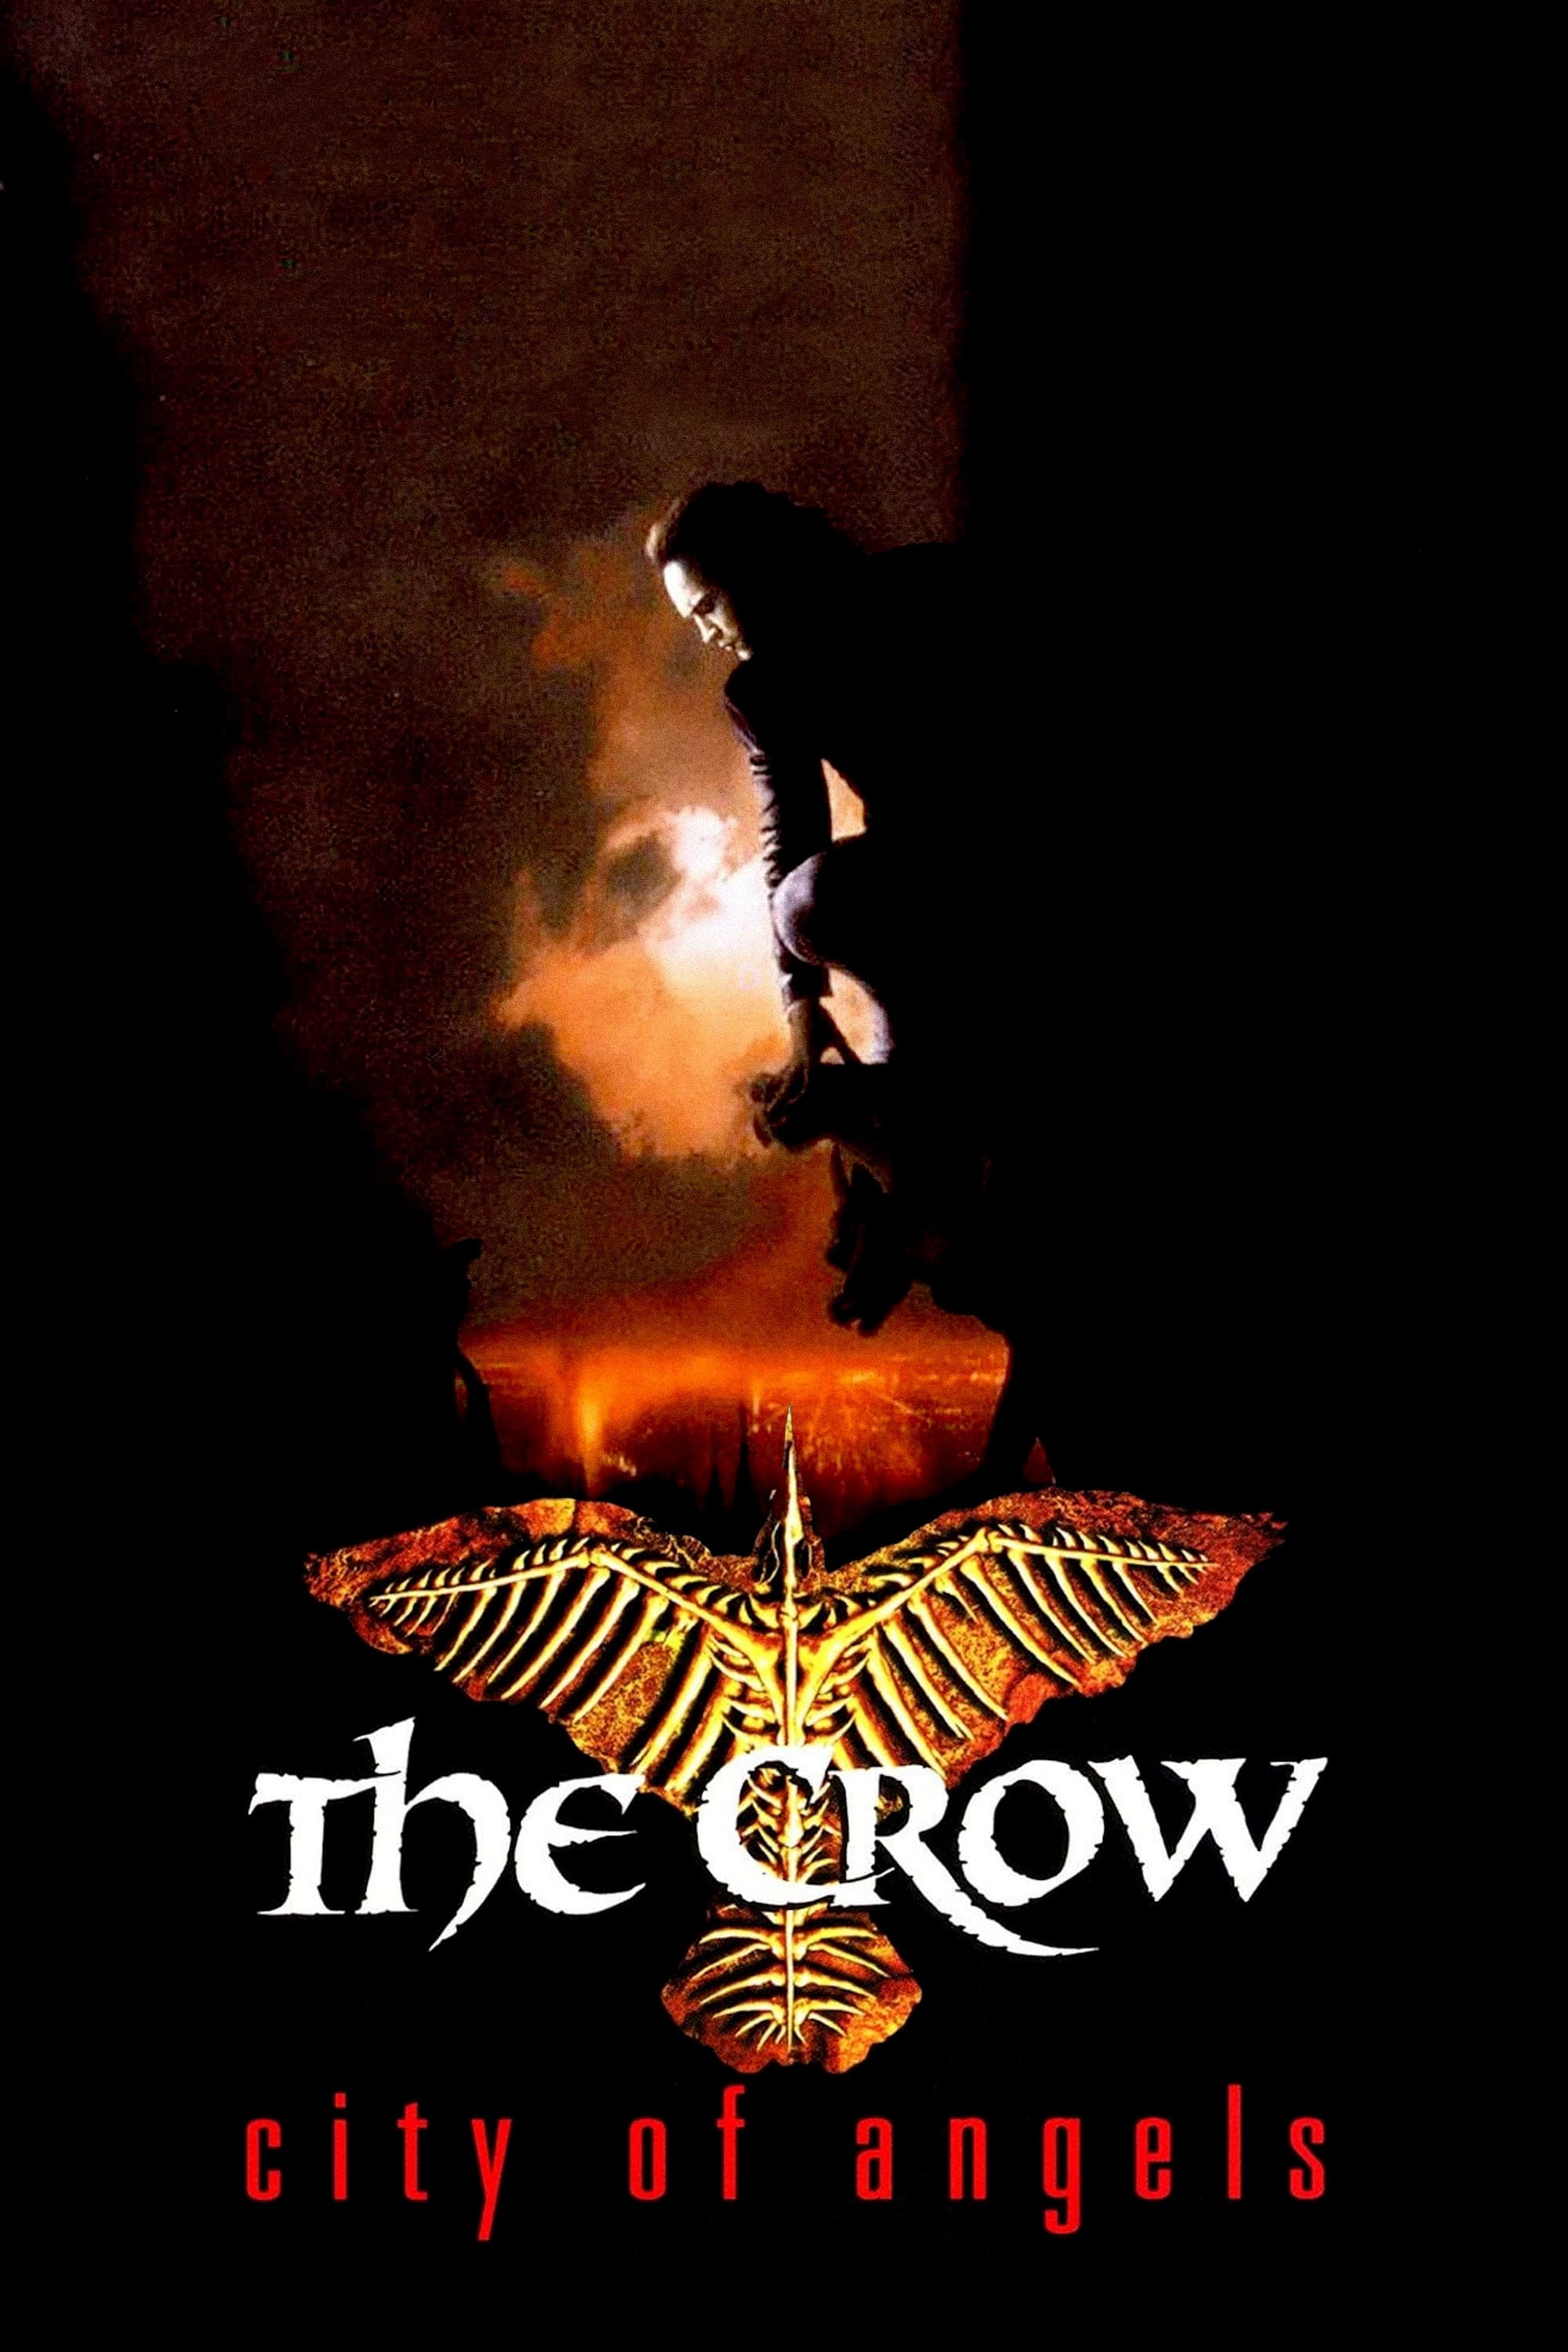 The Crow: City of Angels (The Crow: City of Angels) [1996]